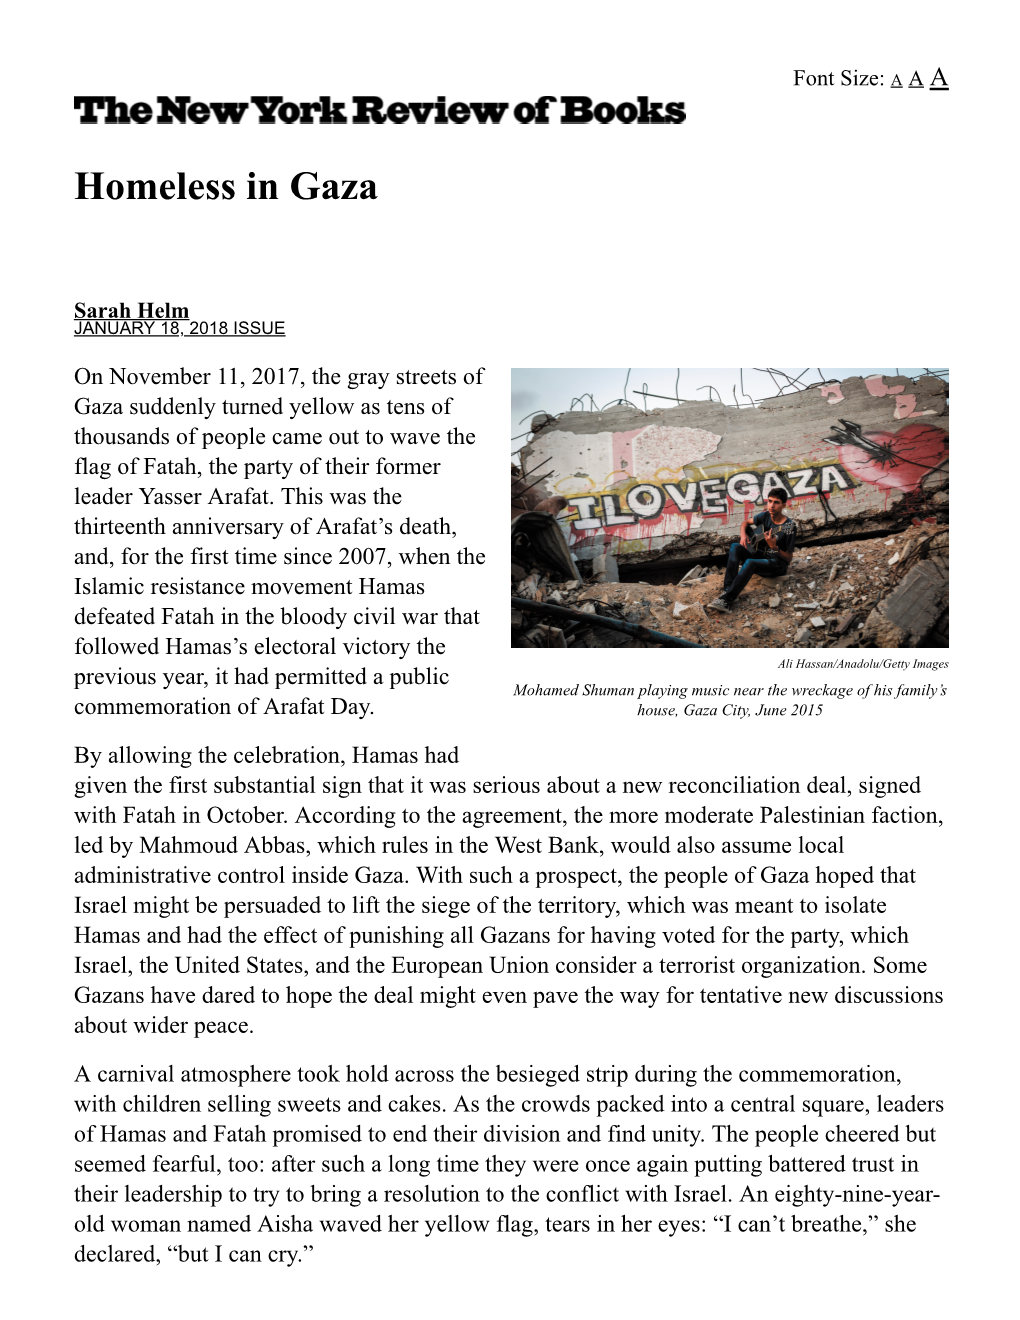 Homeless in Gaza